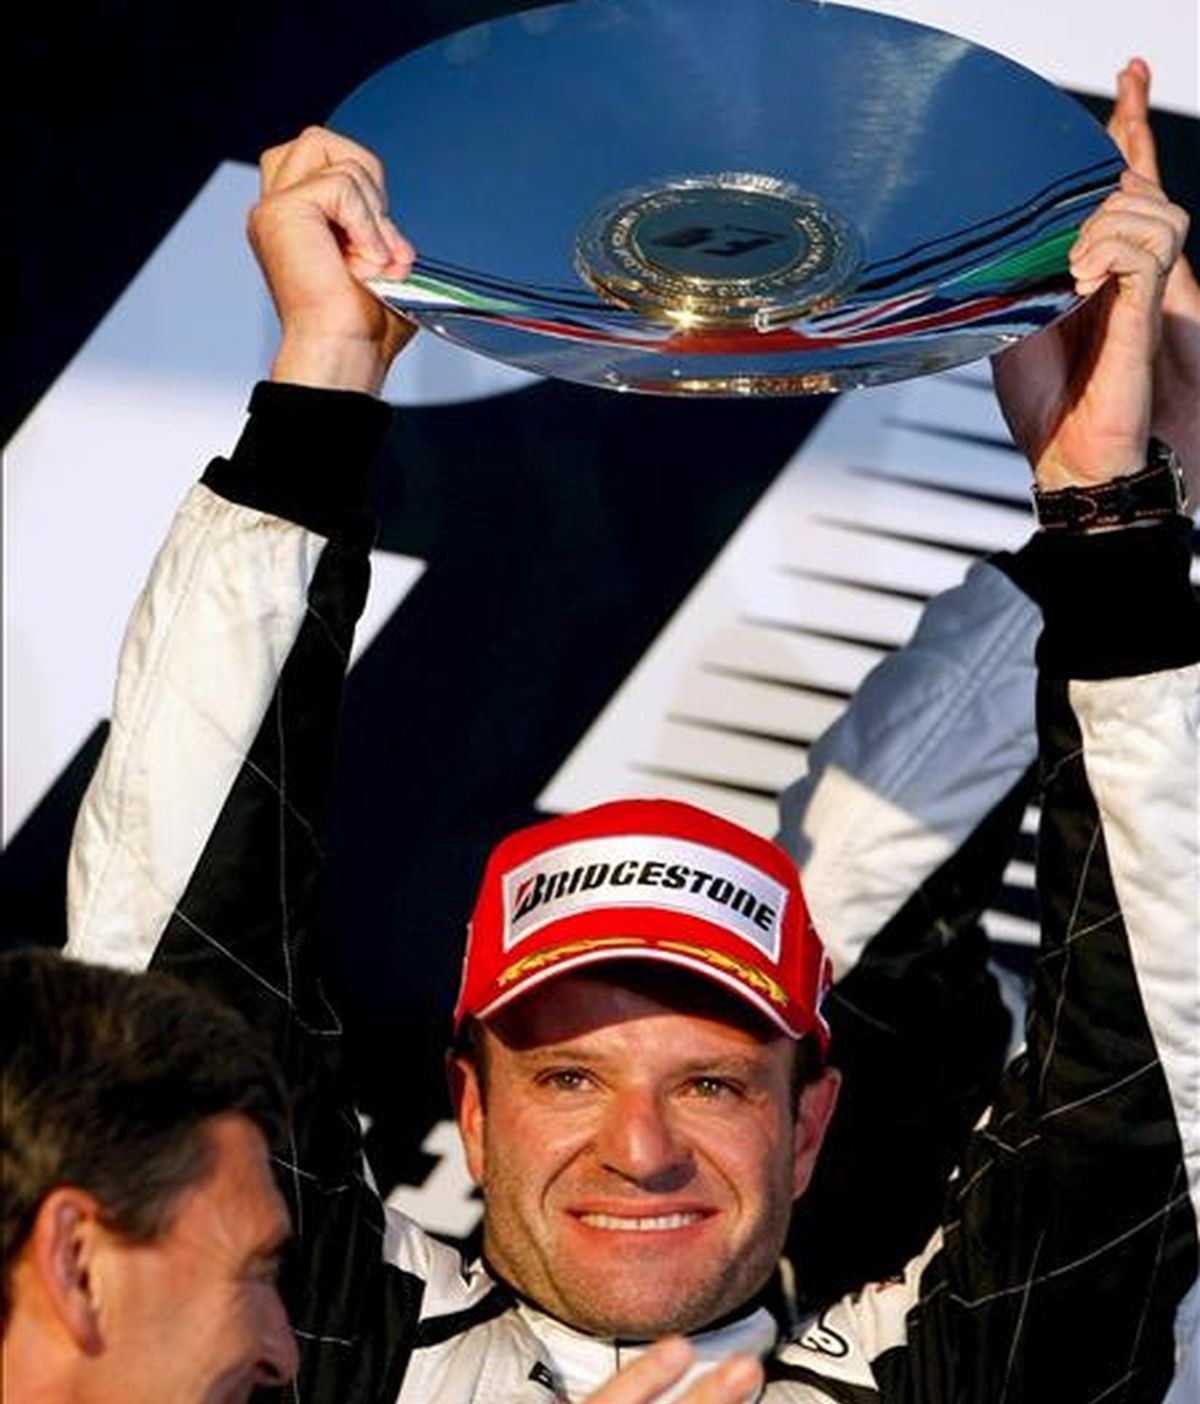 El piloto de Fórmula Uno Rubens Barrichello, de Brawn GP, asegura que tiene un monoplaza para luchar por el título mundial. En la imagen, Barrichello
celebra tras acabar segundo en el Gran Premio de Australia. EFE/Archivo